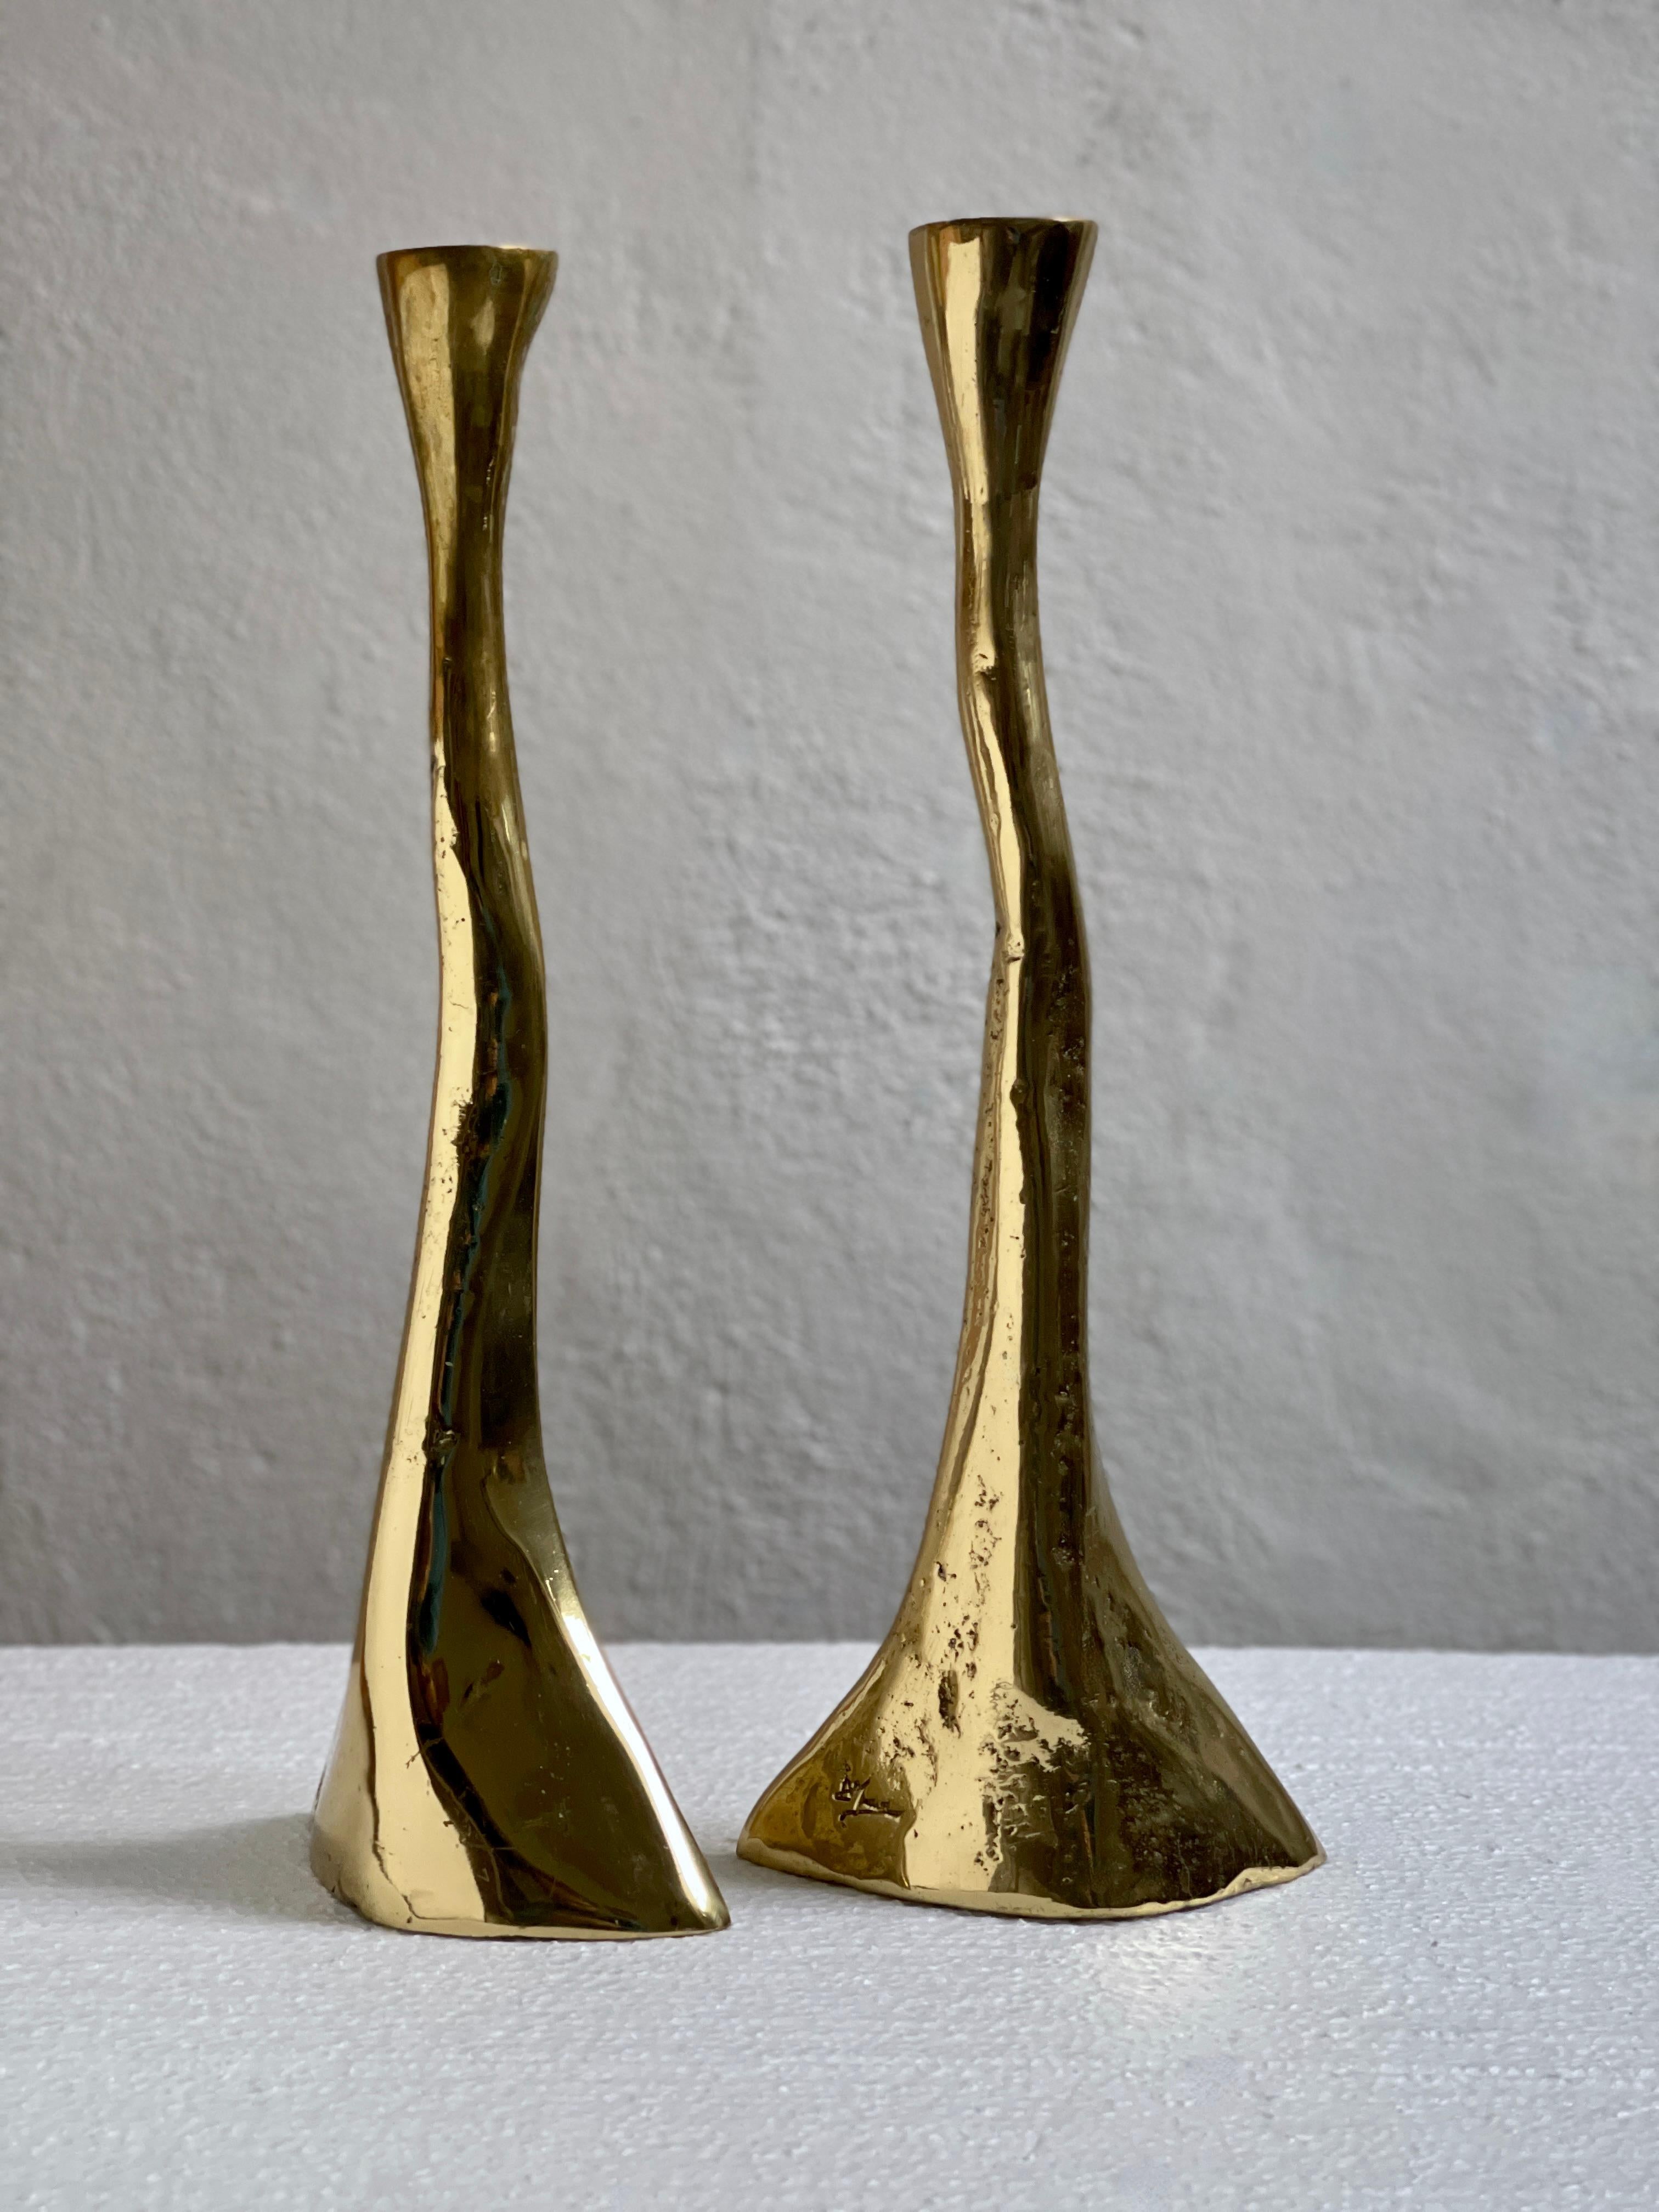 Ein seltenes Paar massiver und schwerer Kerzenhalter aus Messing aus der Mitte des 20. Jahrhunderts in Dänemark ist ein fesselndes Zeugnis für die Verschmelzung von Handwerkskunst und Design in der dekorativen Kunst dieser Zeit.

Das Rustikale  Die